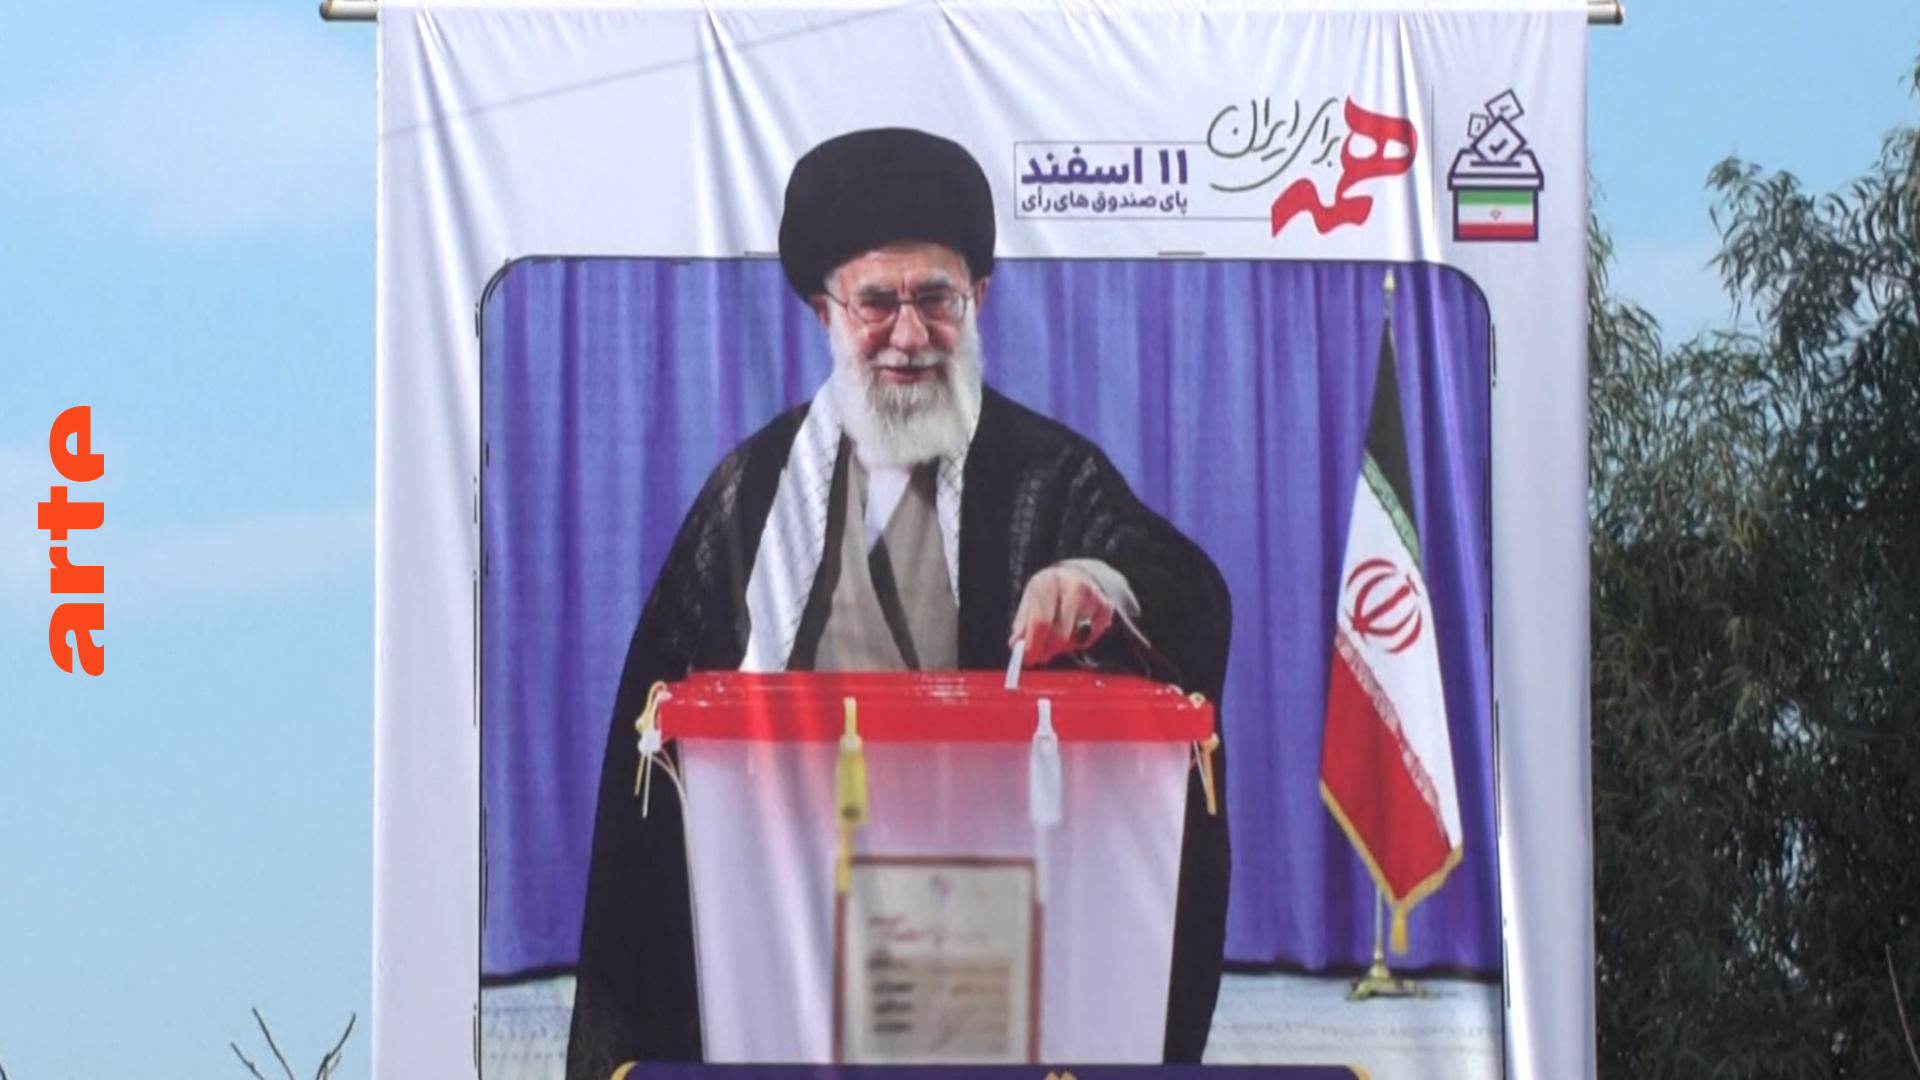 Parlamentswahl im Iran: Wie viele werden sie aus Protest boykottieren?